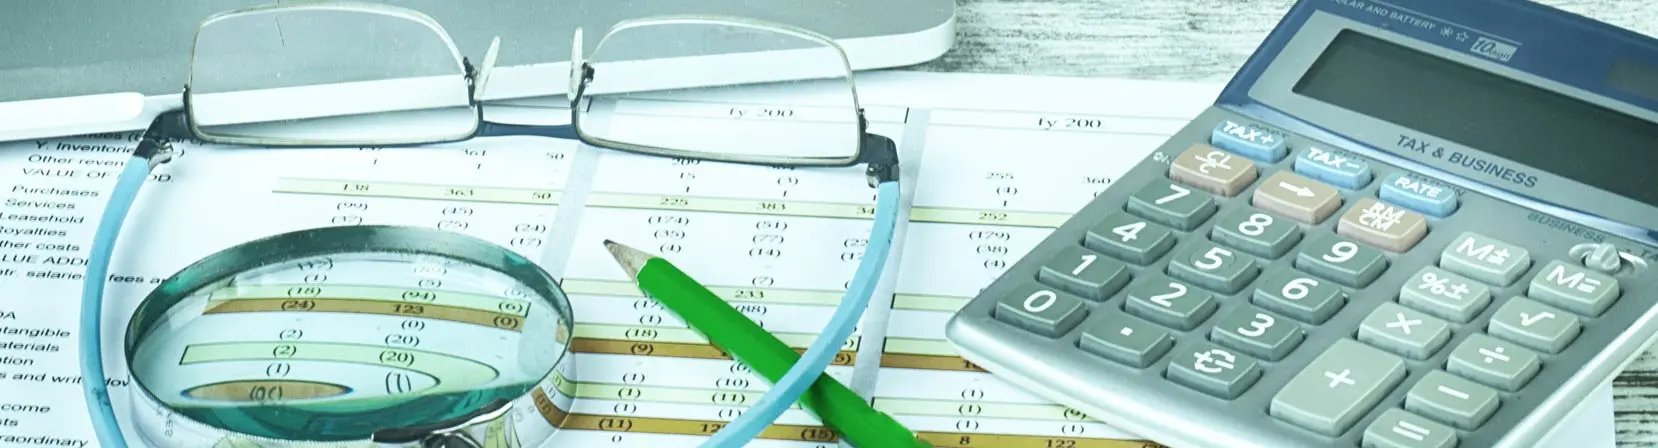 máquina de calcular, óculos, lupa e um lápis em cima de uma mesa